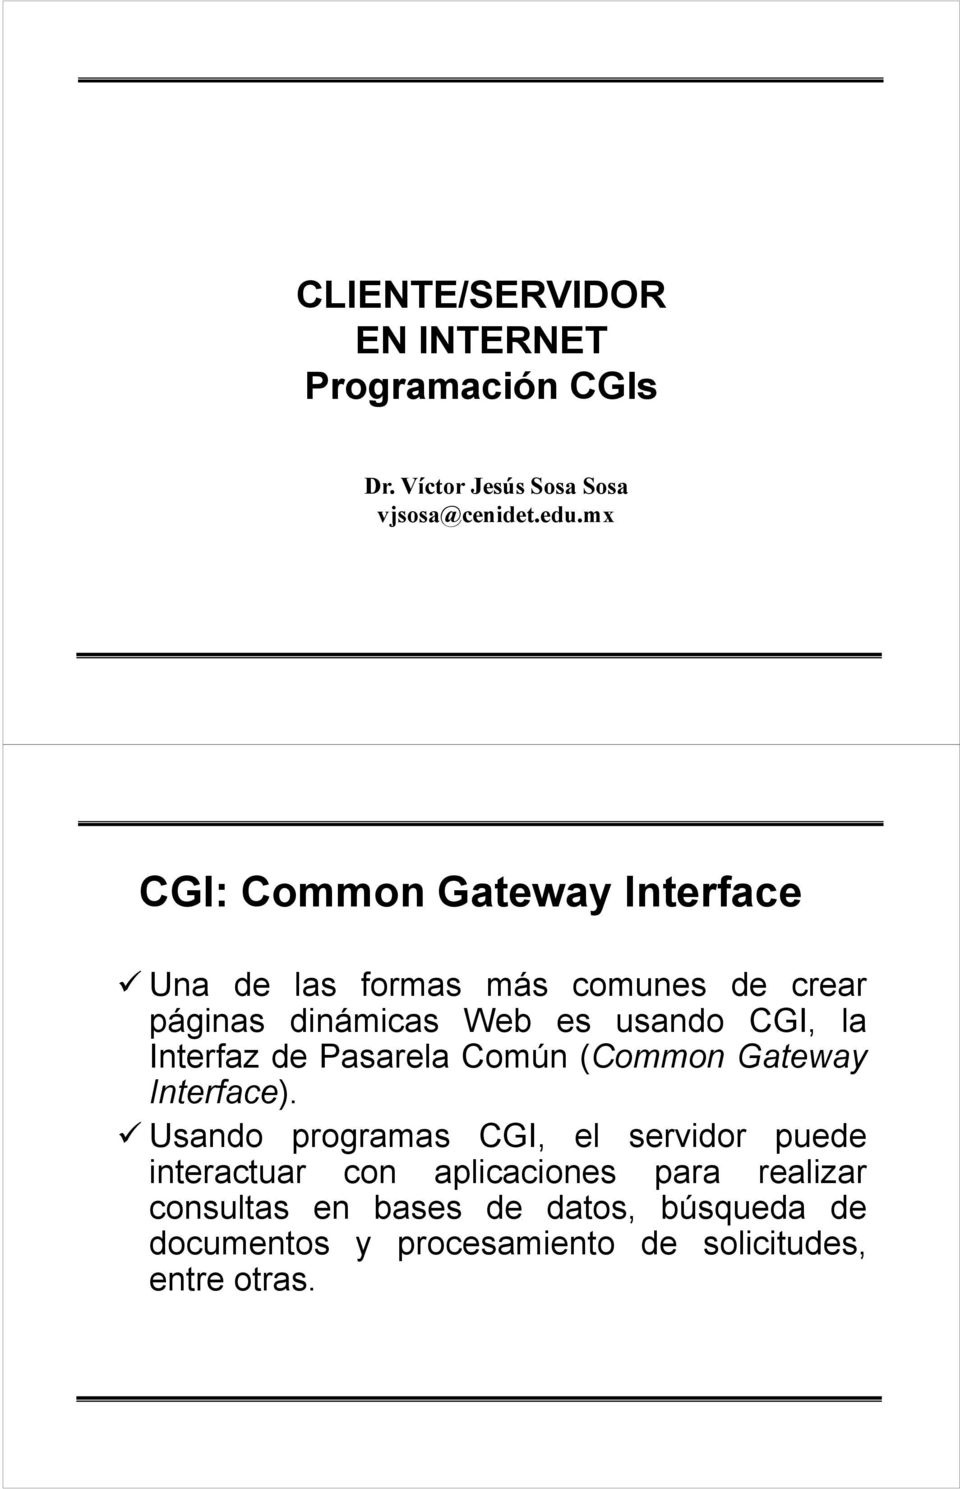 la Interfaz de Pasarela Común (Common Gateway Interface).